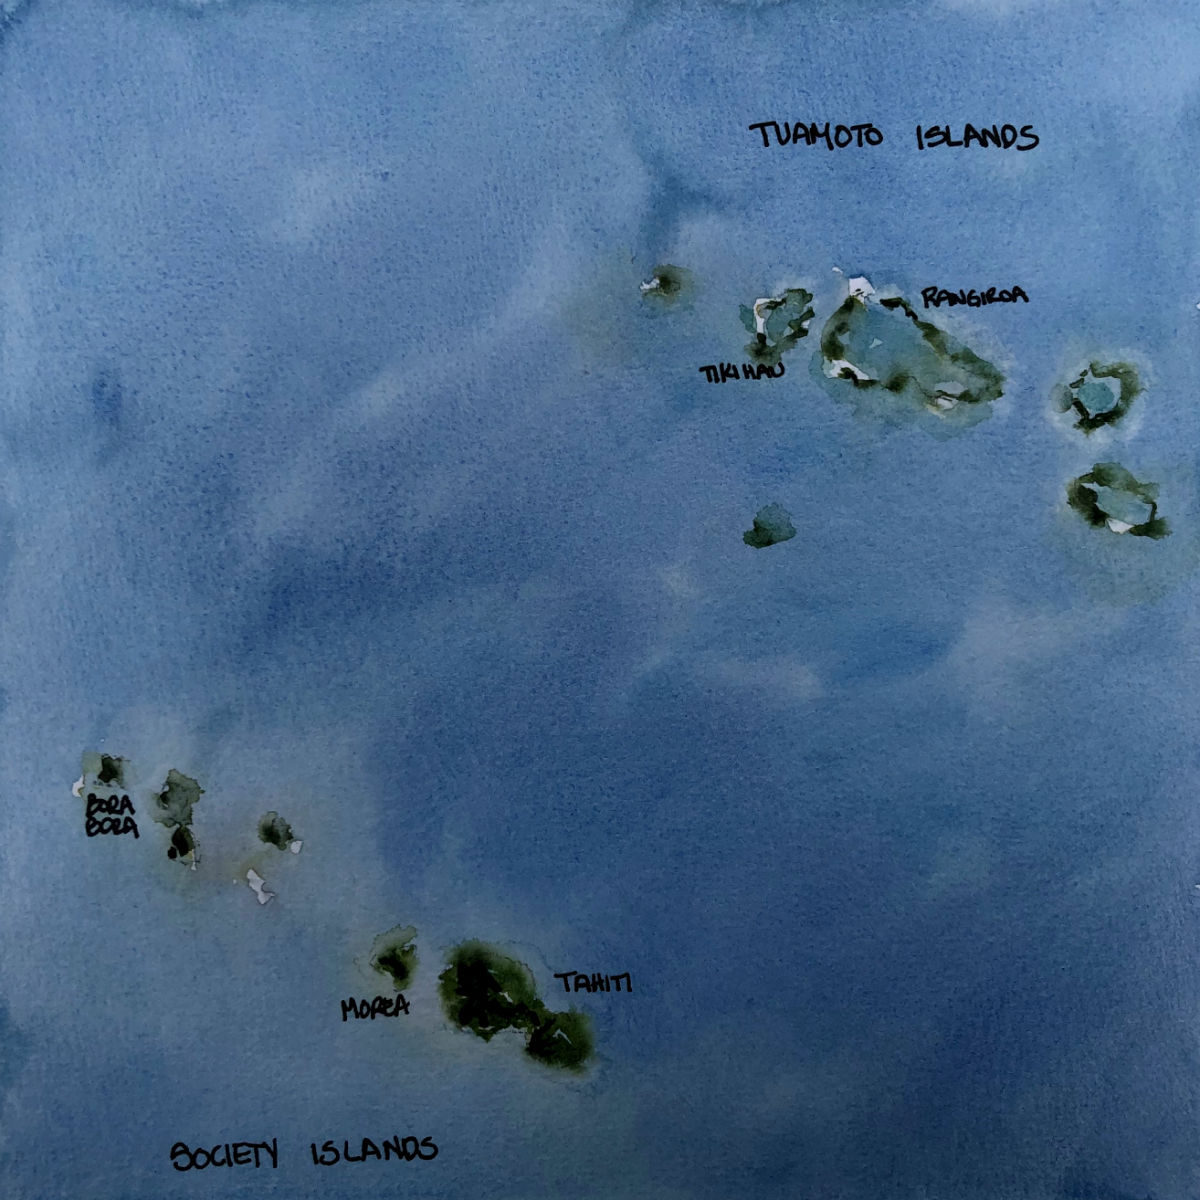 Tahiti, Tikihau and Rangiroa